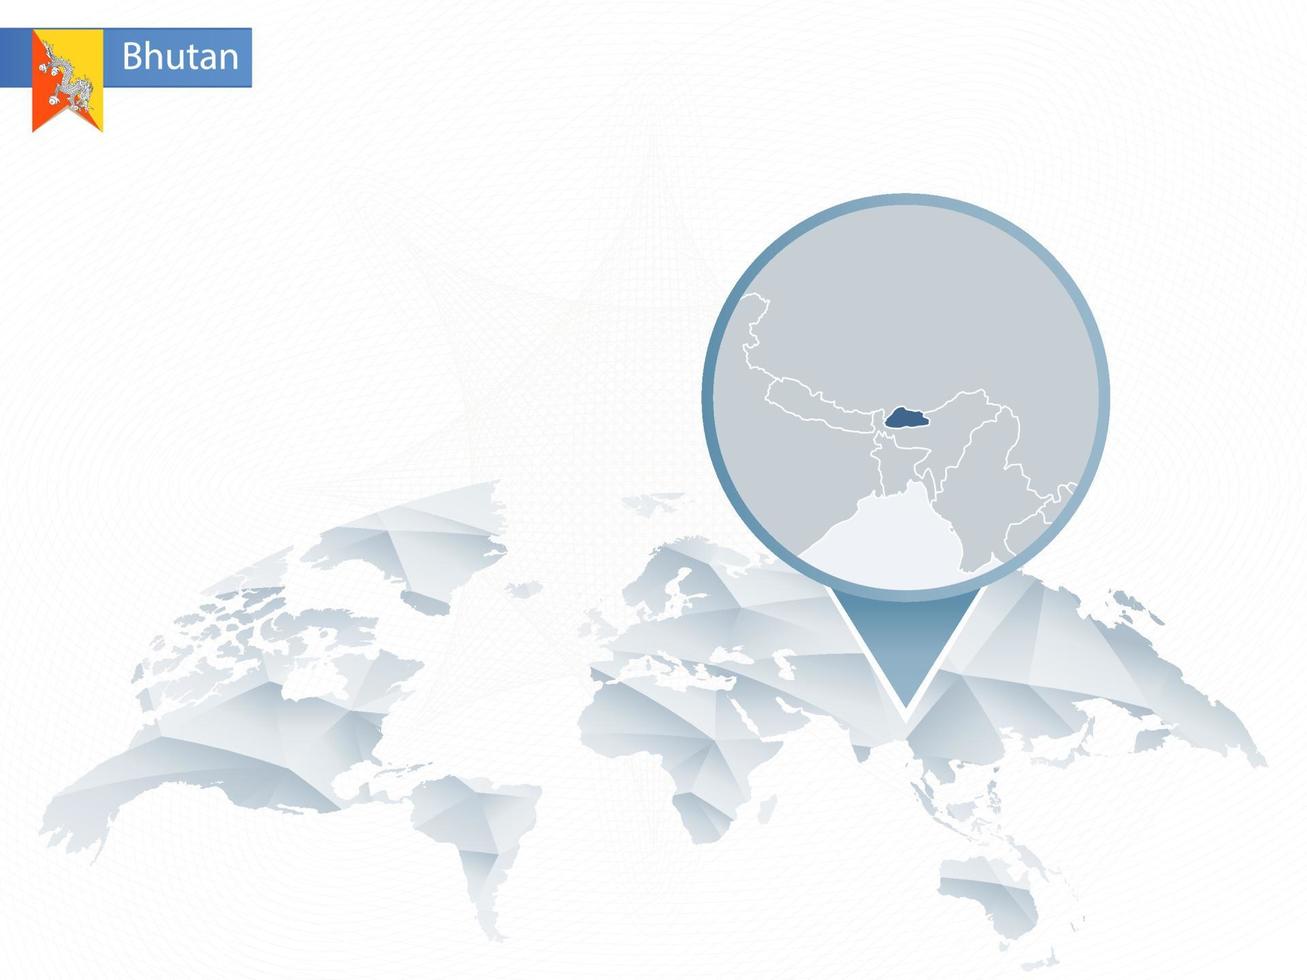 mappa del mondo arrotondata astratta con mappa dettagliata del bhutan appuntata. vettore